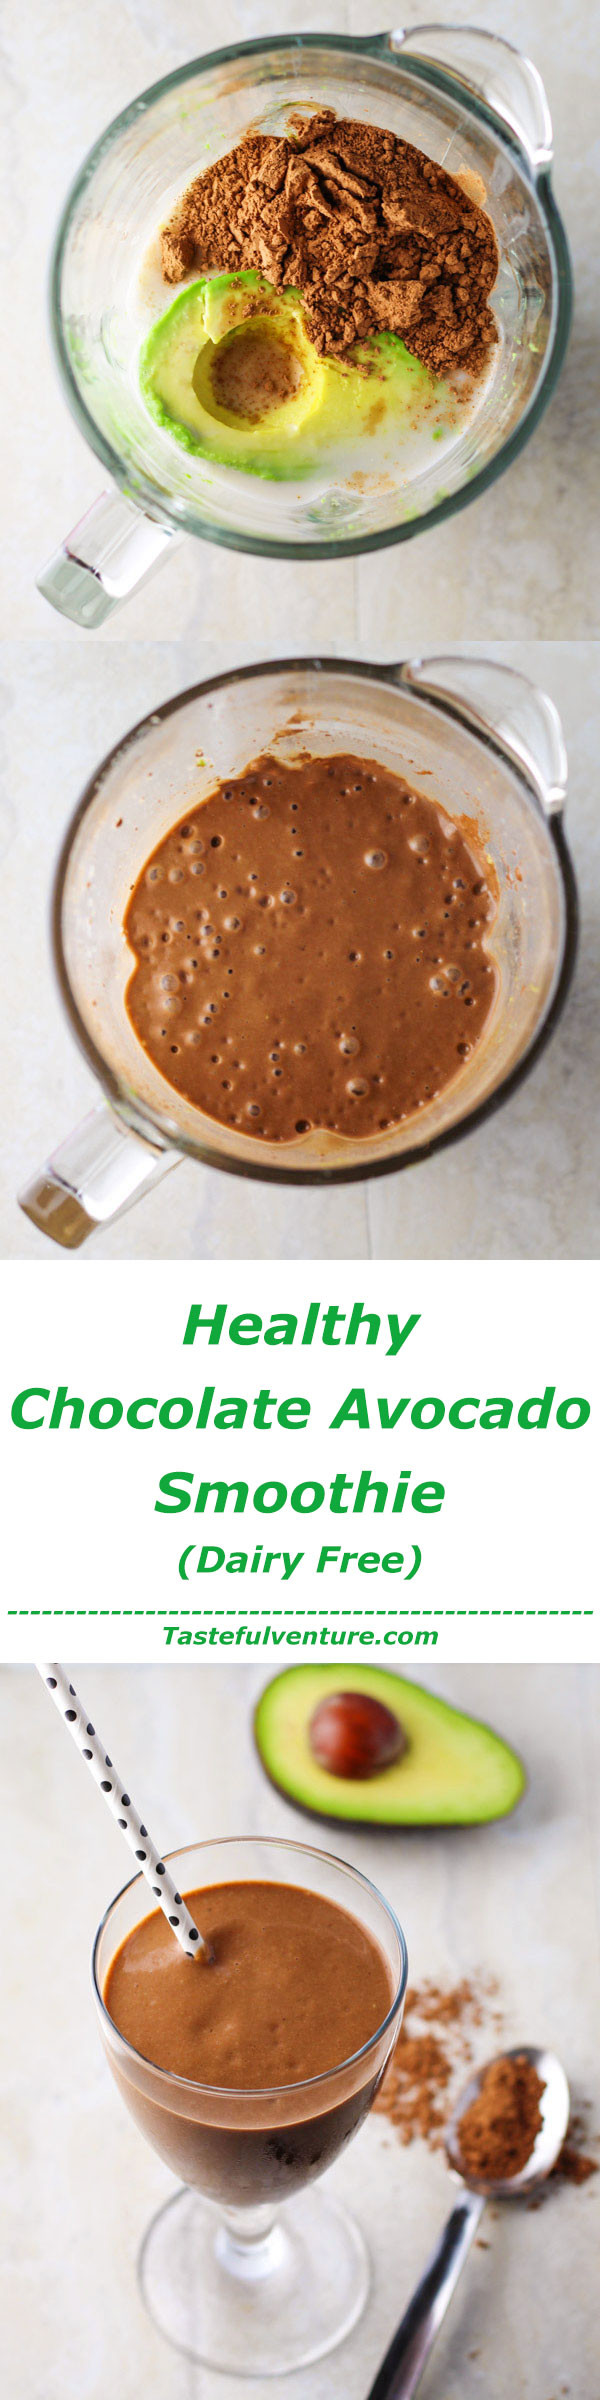 Healthy Cocoa Powder Recipes
 Healthy Chocolate Avocado Smoothie Tastefulventure